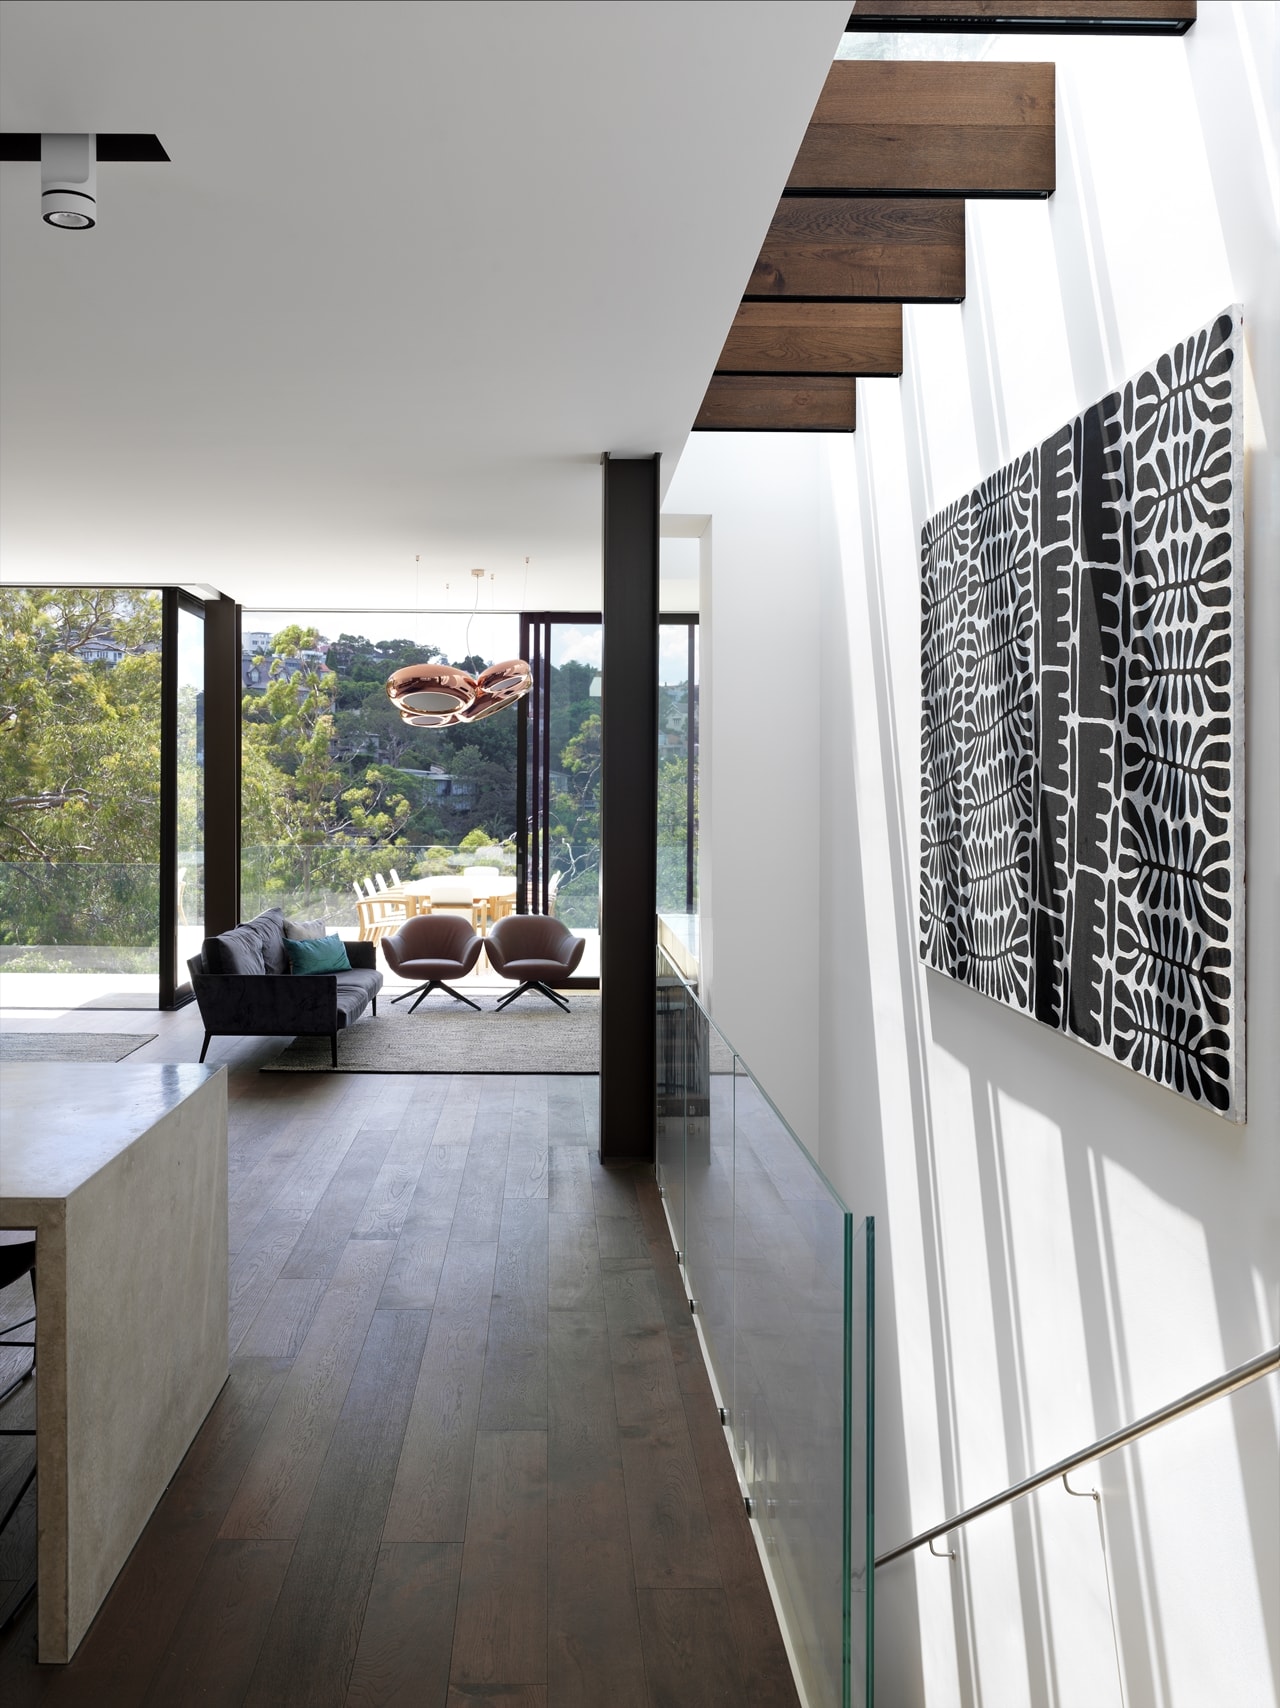 Staircase glass belustrade in a hillside house designed by Rolf Ockert